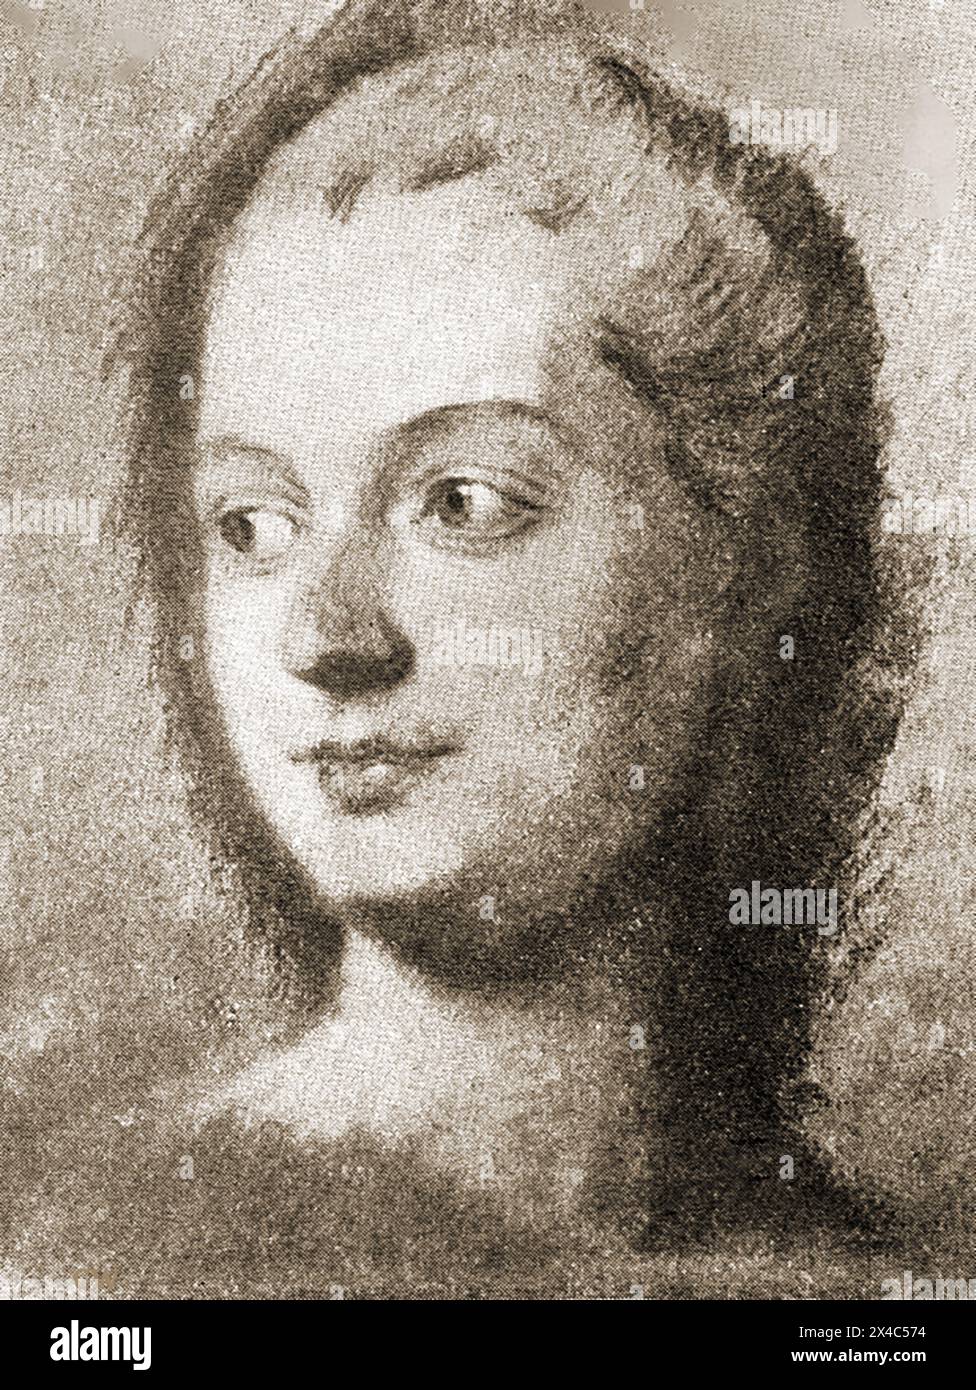 Une esquisse informelle de Madame de Pompadour. Jeanne Antoinette poisson, marquise de Pompadour (1721 – 1764), communément connue sous le nom de Madame de Pompadour, était membre de la cour de France et maîtresse officielle du roi Louis XV - un premier portrait informel de Madame de Pompadour. Jeanne Antoinette poisson, marquise de Pompadour (1721 - 1764), plus connue sous le nom de Madame de Pompadour, était membre de la cour de France et maîtresse officielle du roi Louis XV. - Eine frühe à travailler Porträtskizze von Madame de Pompadour. Jeanne Antoinette poisson, marquise de Pompadour . Banque D'Images